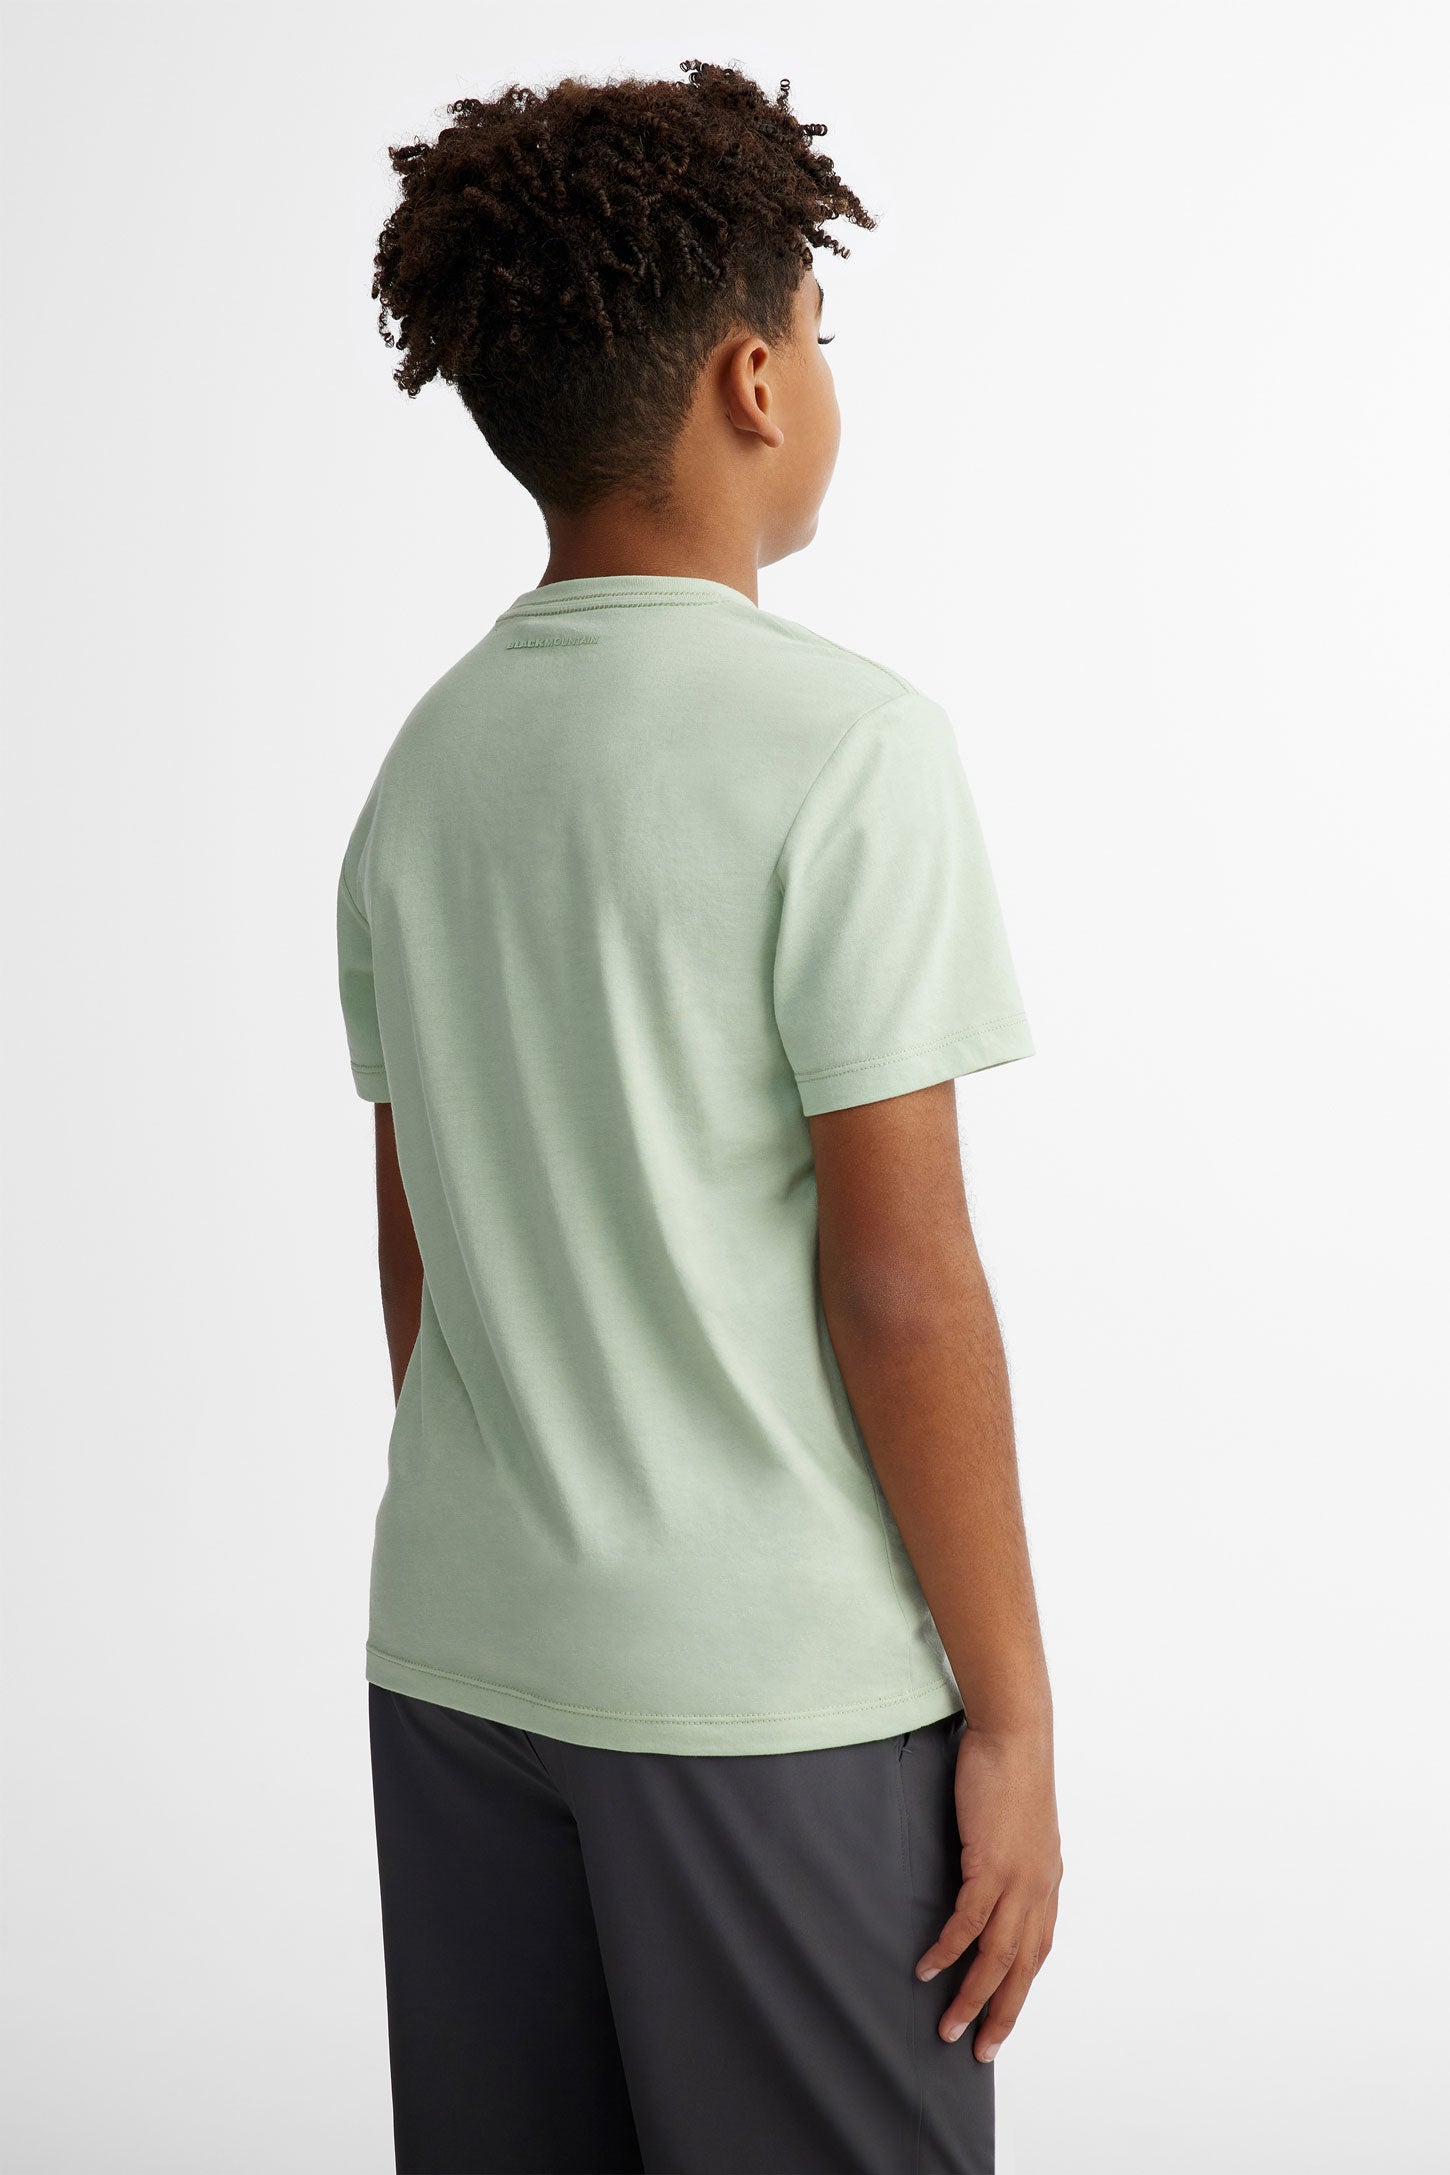 T-shirt col rond coton bio BM, 2/40$ - Ado garçon && MENTHE